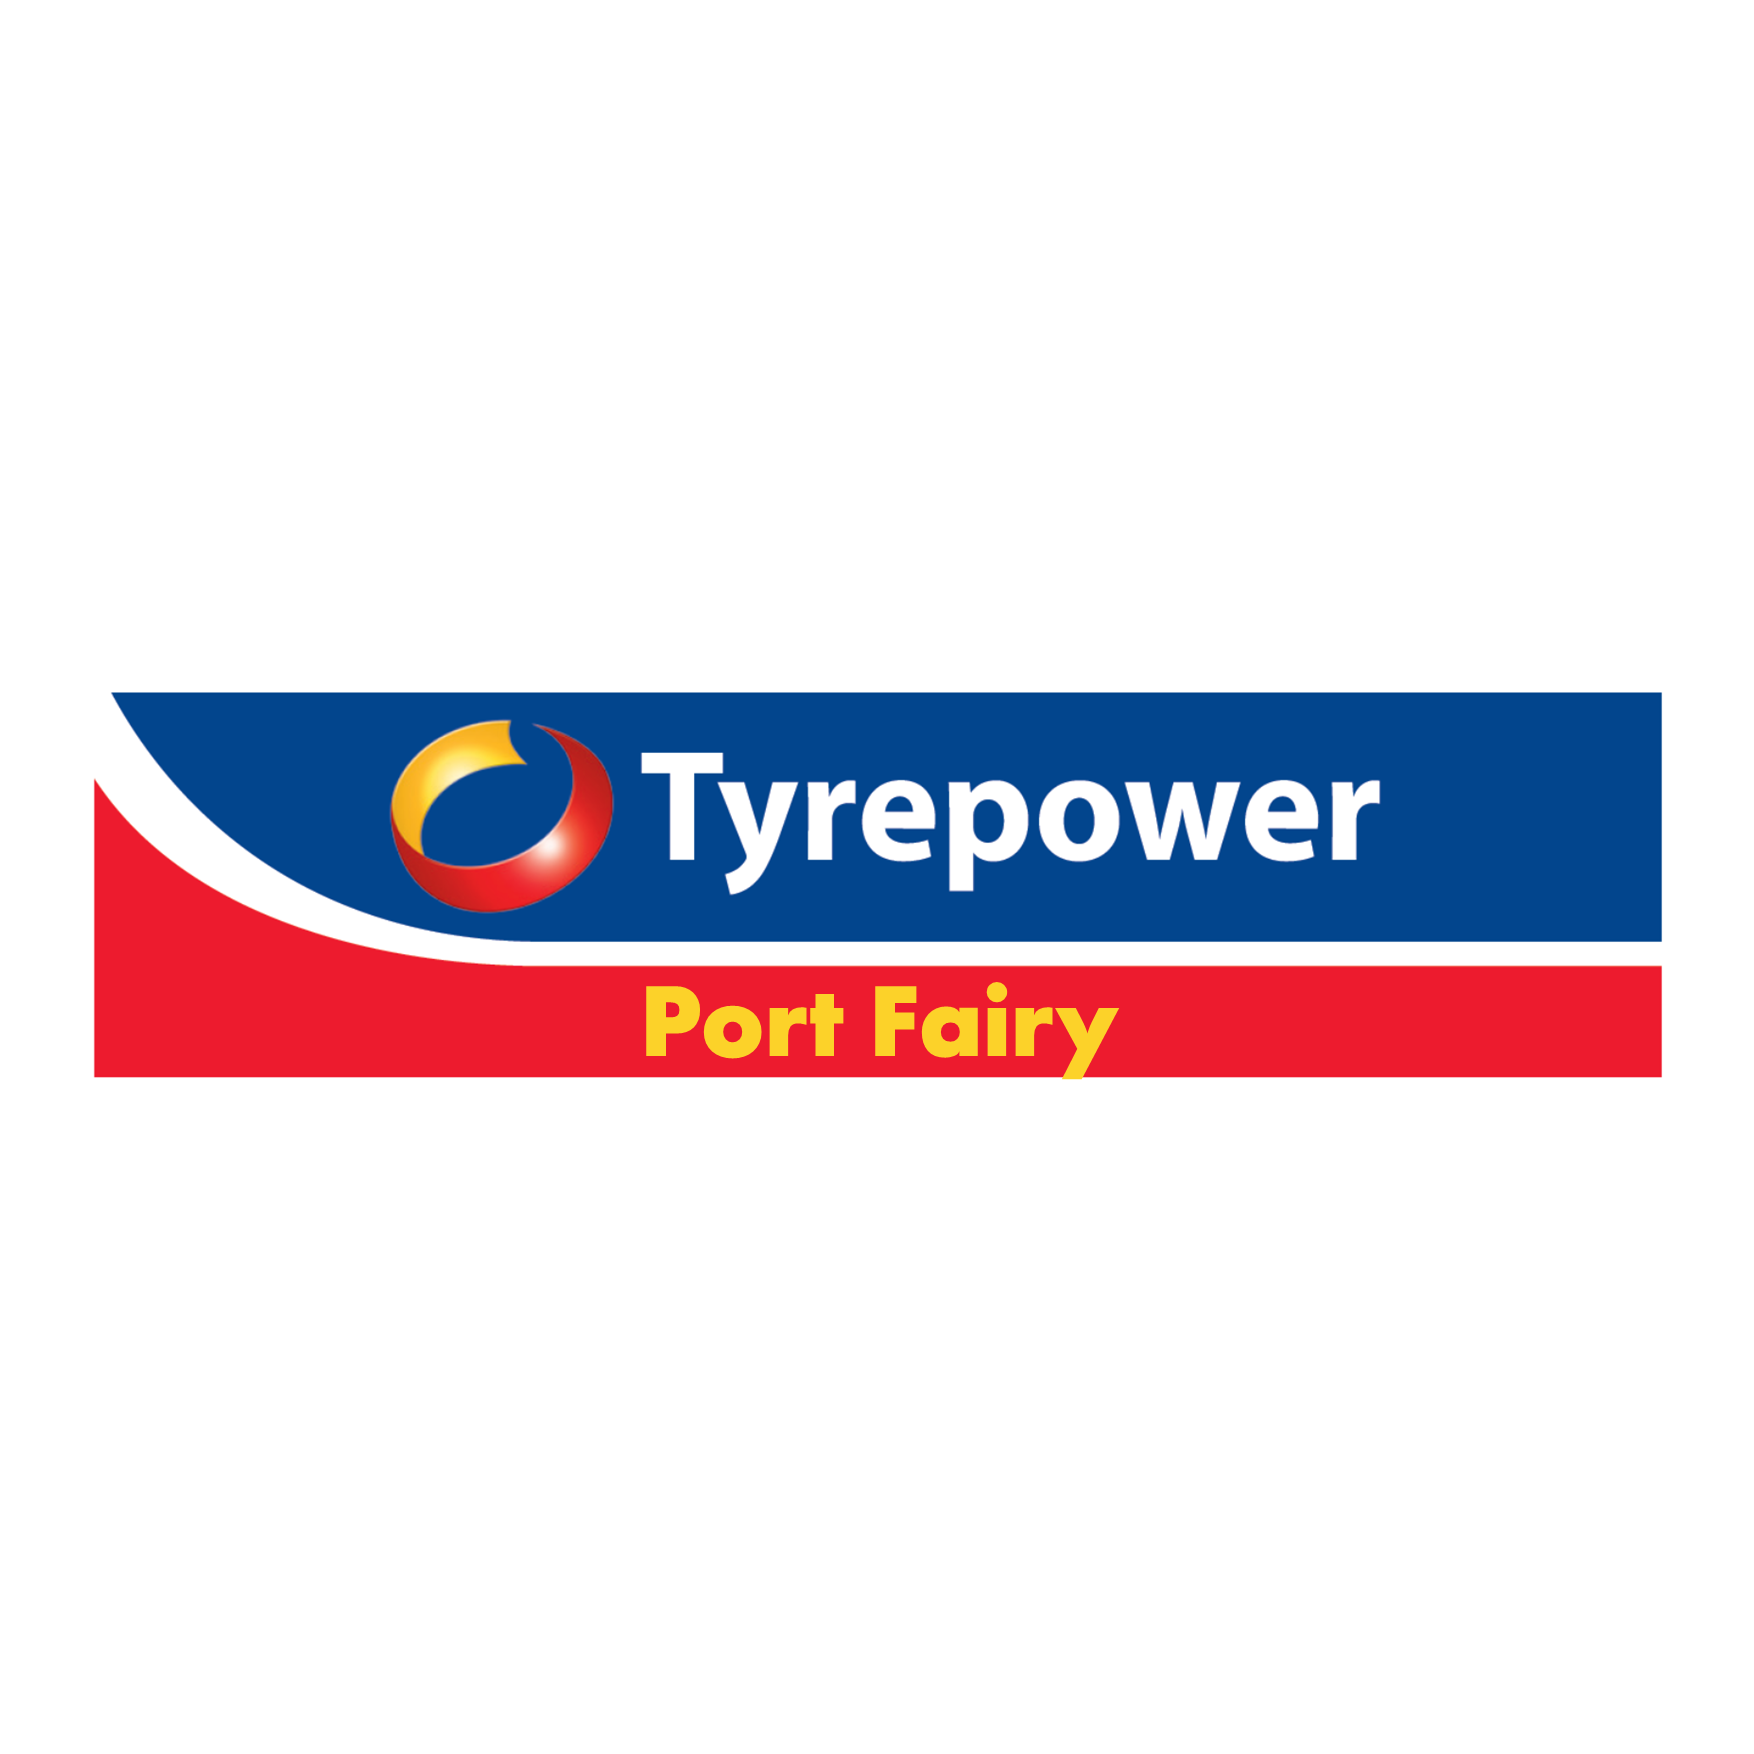 Tyrepower Port Fairy - Port Fairy, VIC 3284 - (03) 5568 2218 | ShowMeLocal.com